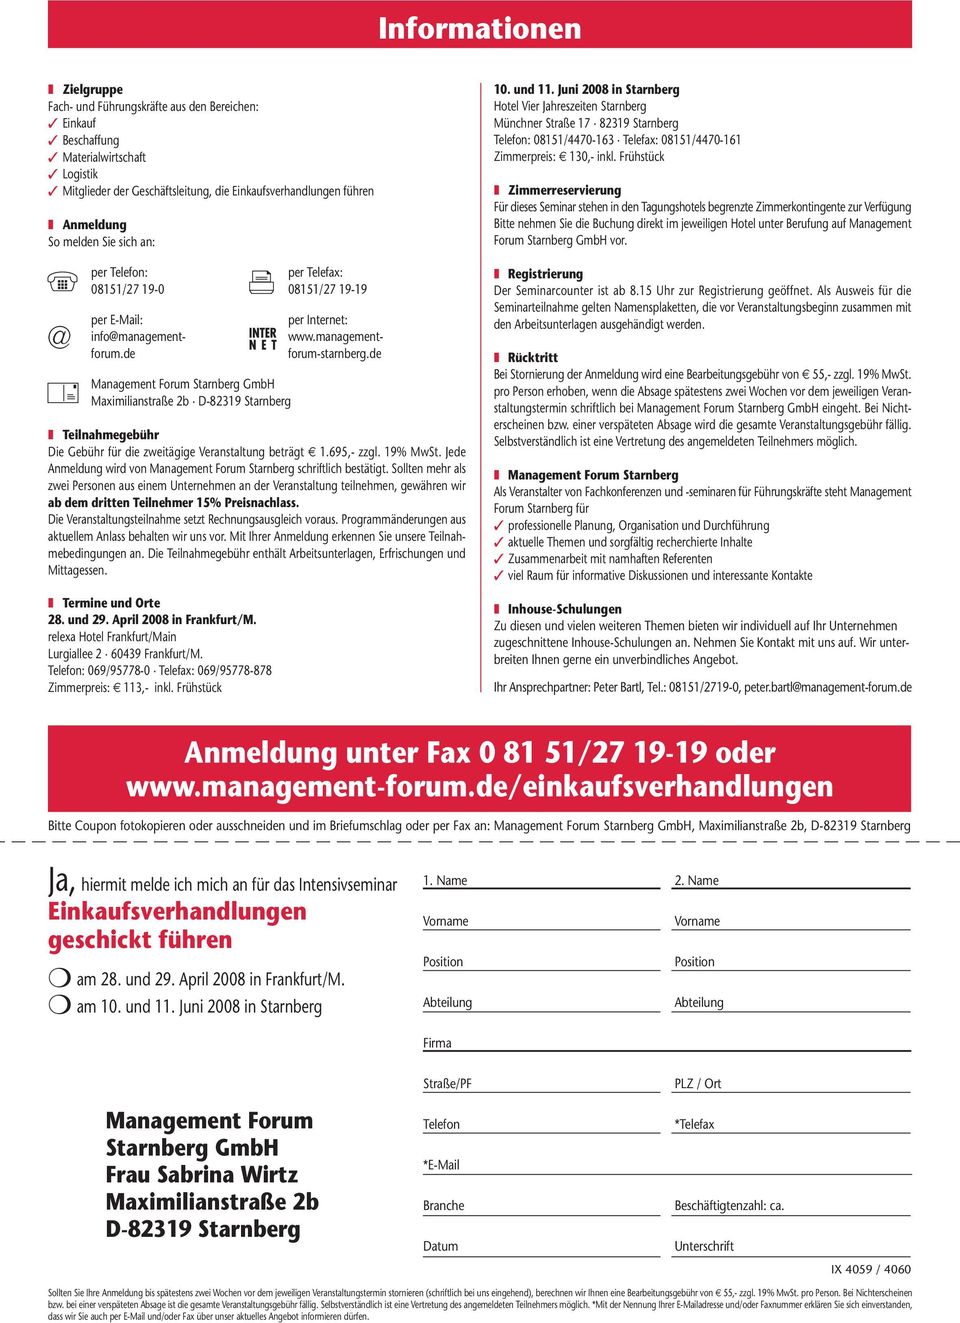 de Management Forum Starnberg GmbH Maximilianstraße 2b D-82319 Starnberg Teilnahmegebühr Die Gebühr für die zweitägige Veranstaltung beträgt 1.695,- zzgl. 19% MwSt.